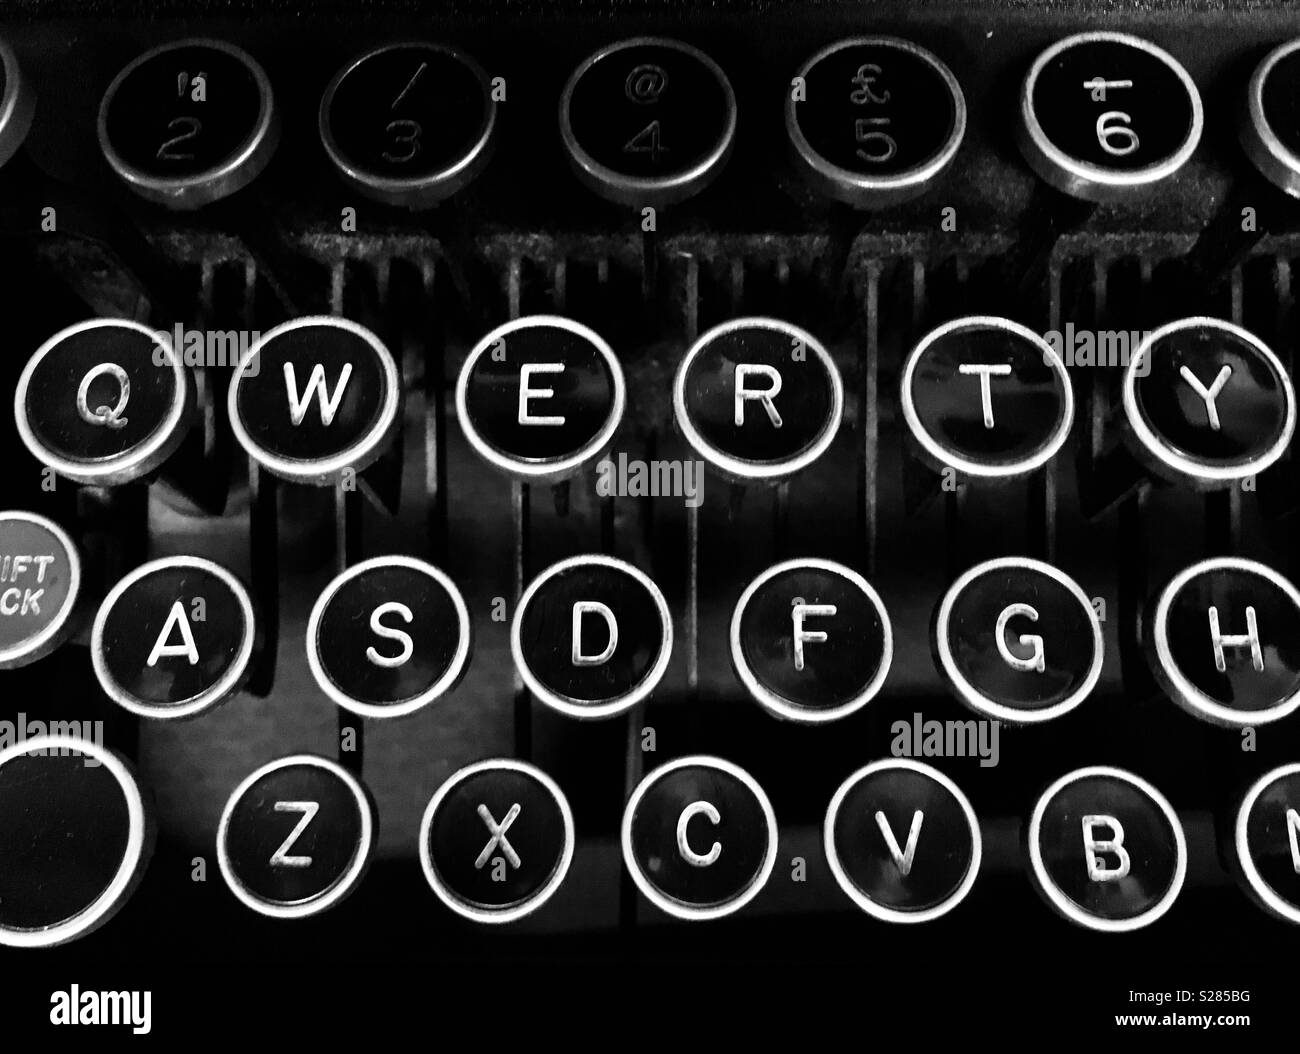 Vintage typewriter qwerty keyboard Stock Photo